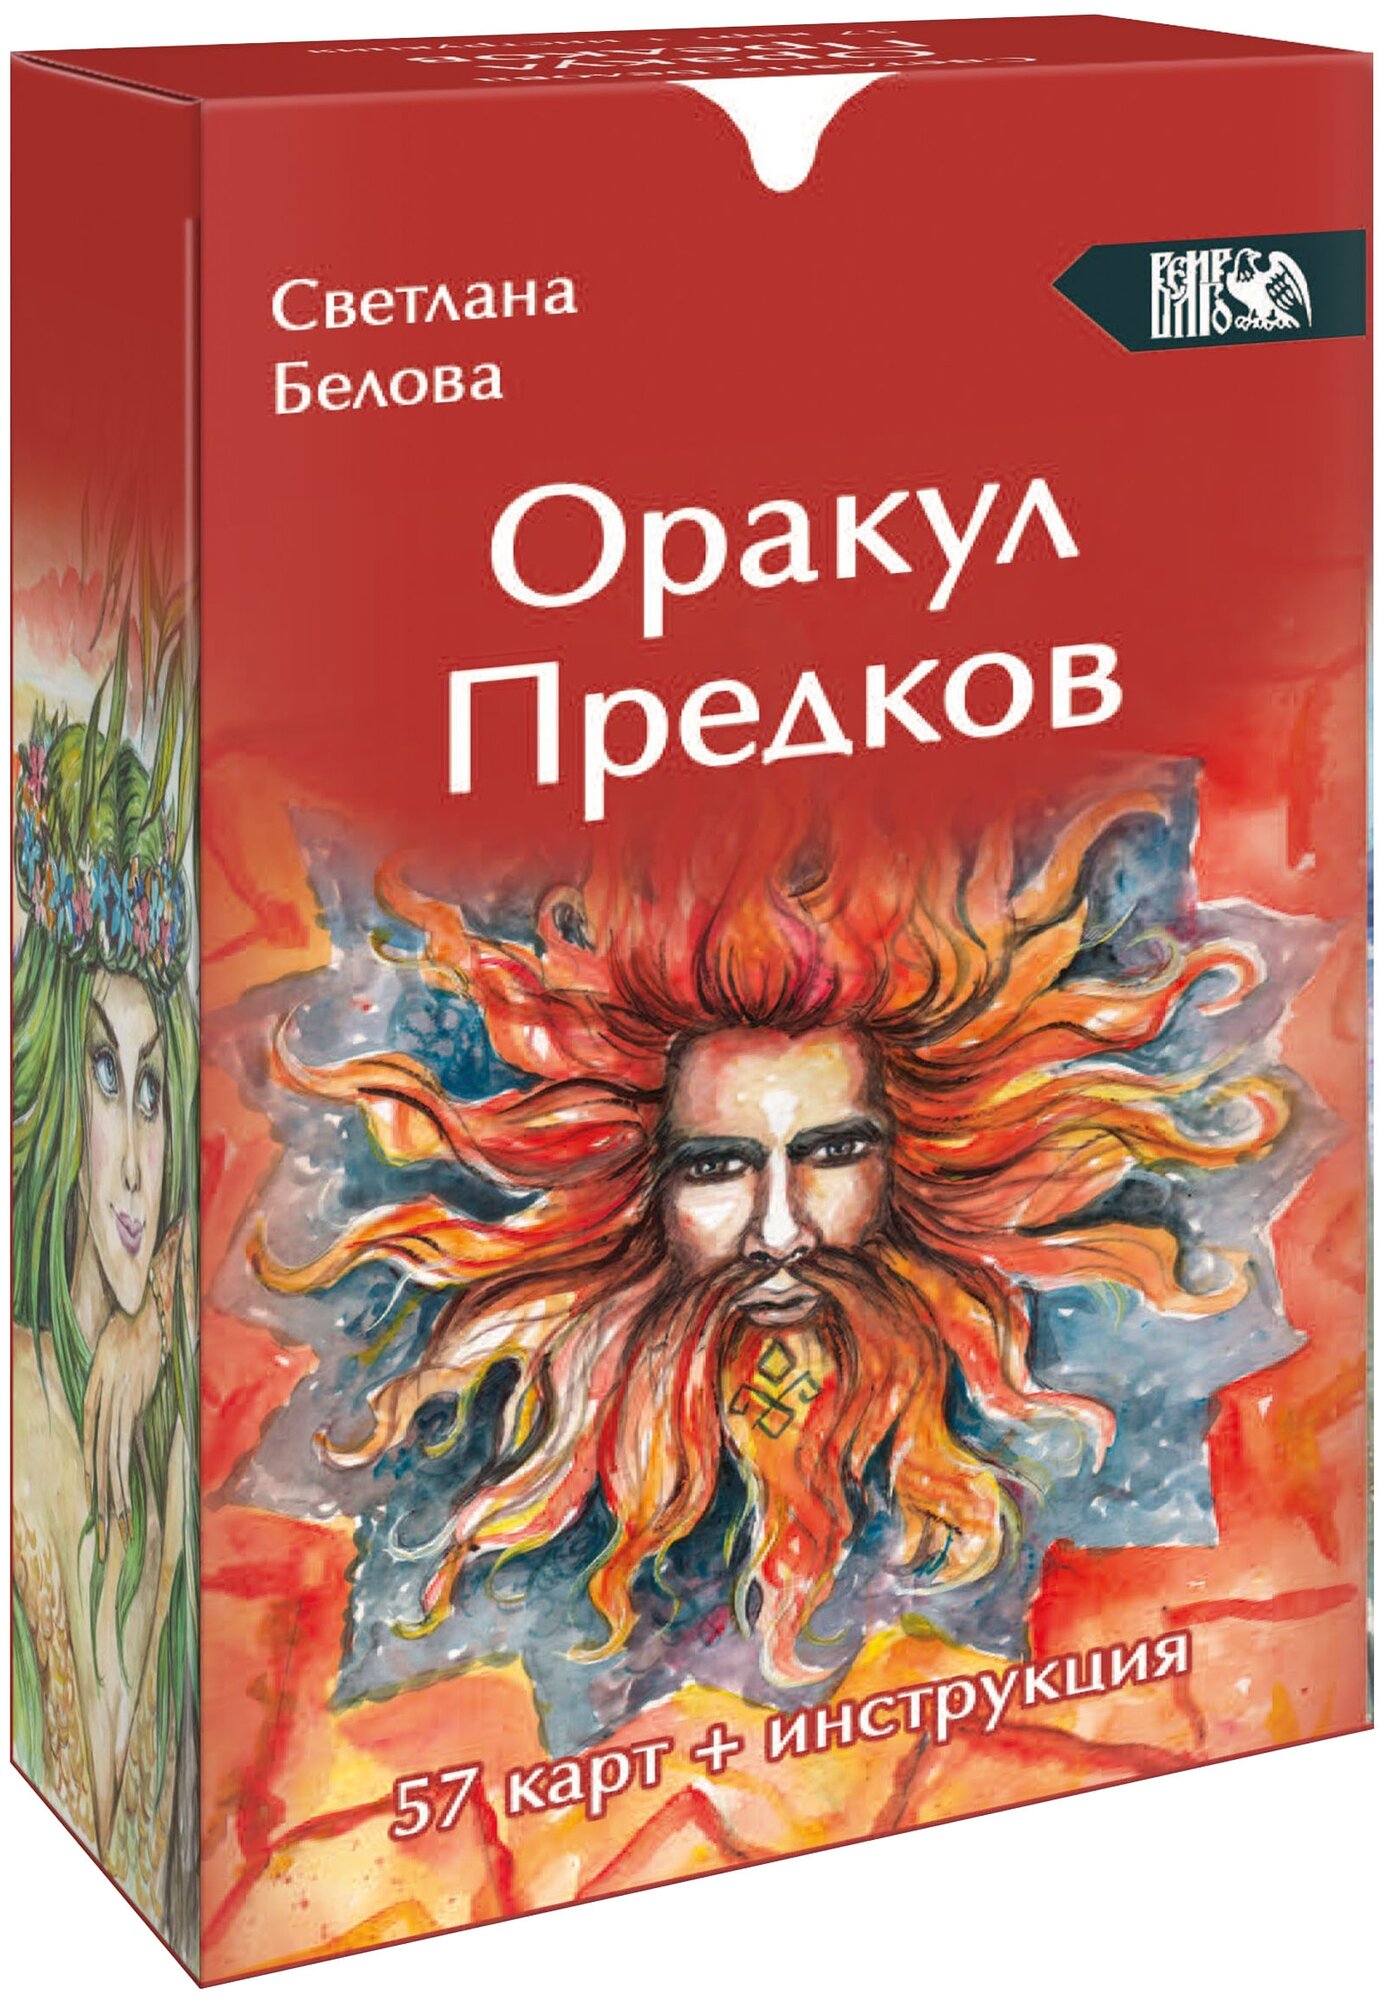 Оракул Предков, 57 карт + инструкция - фото №1